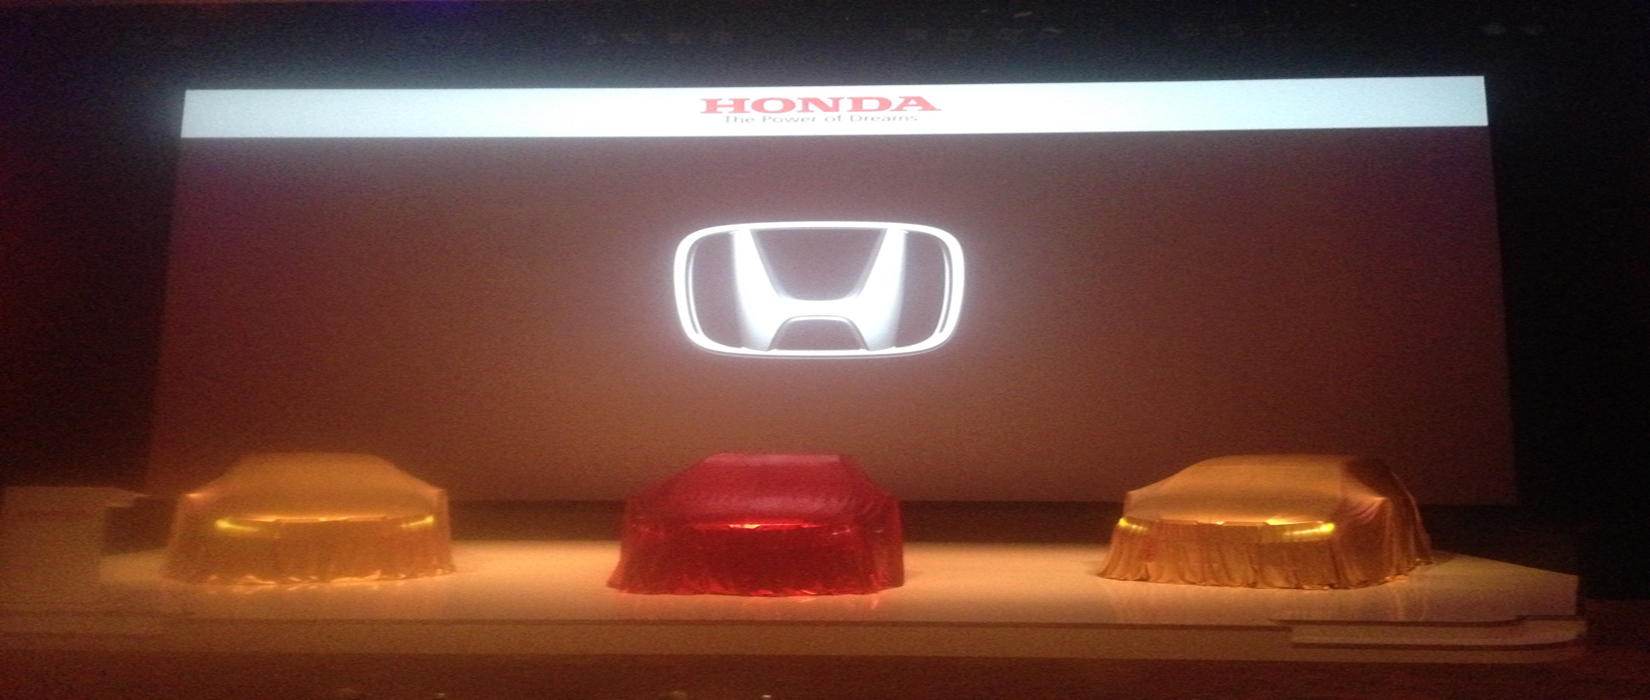 New Mobilio Awal Dari Seri Seri Honda Yang Akan Muncul Di Indonesia